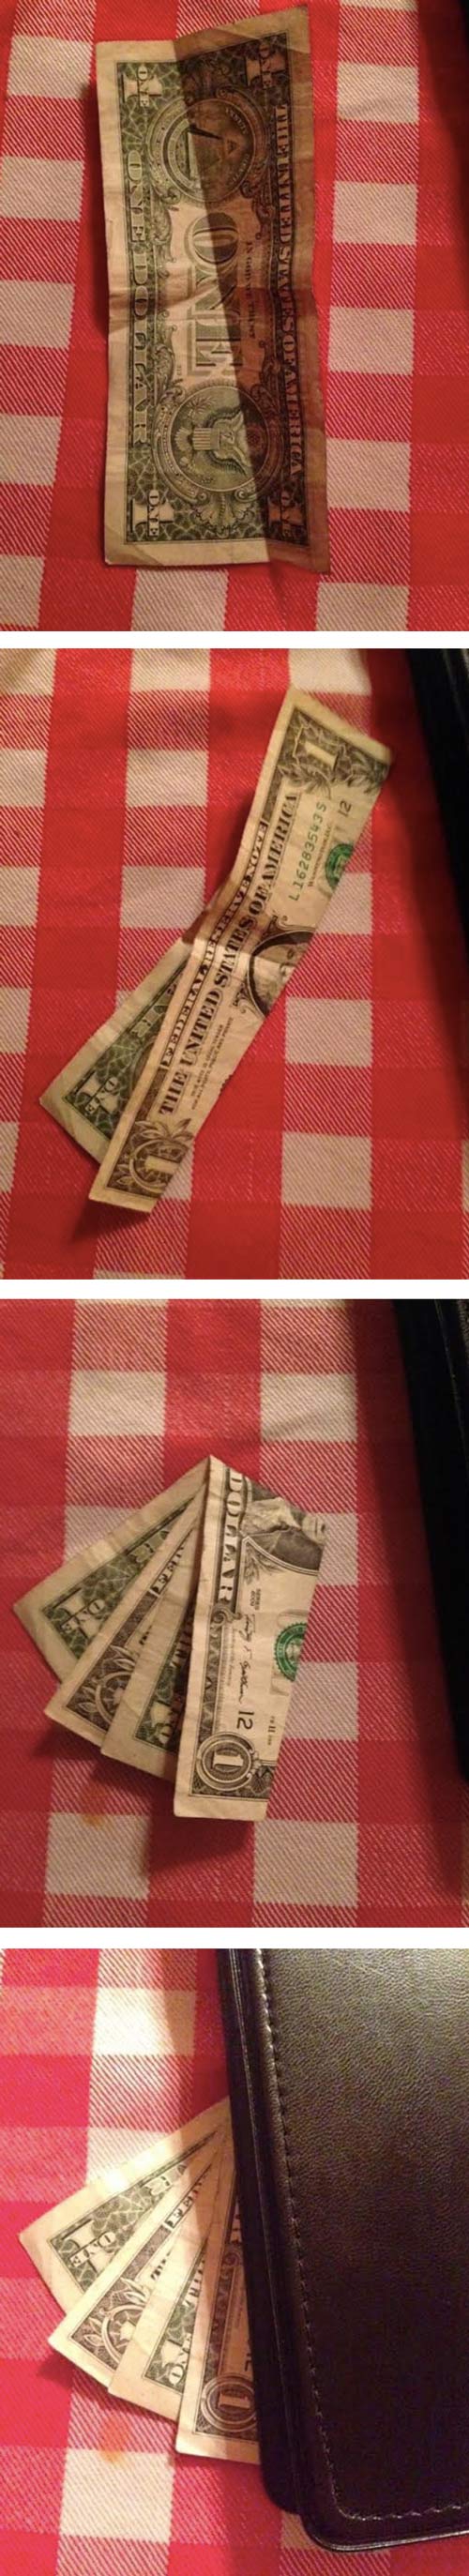 How to tip like an a-hole